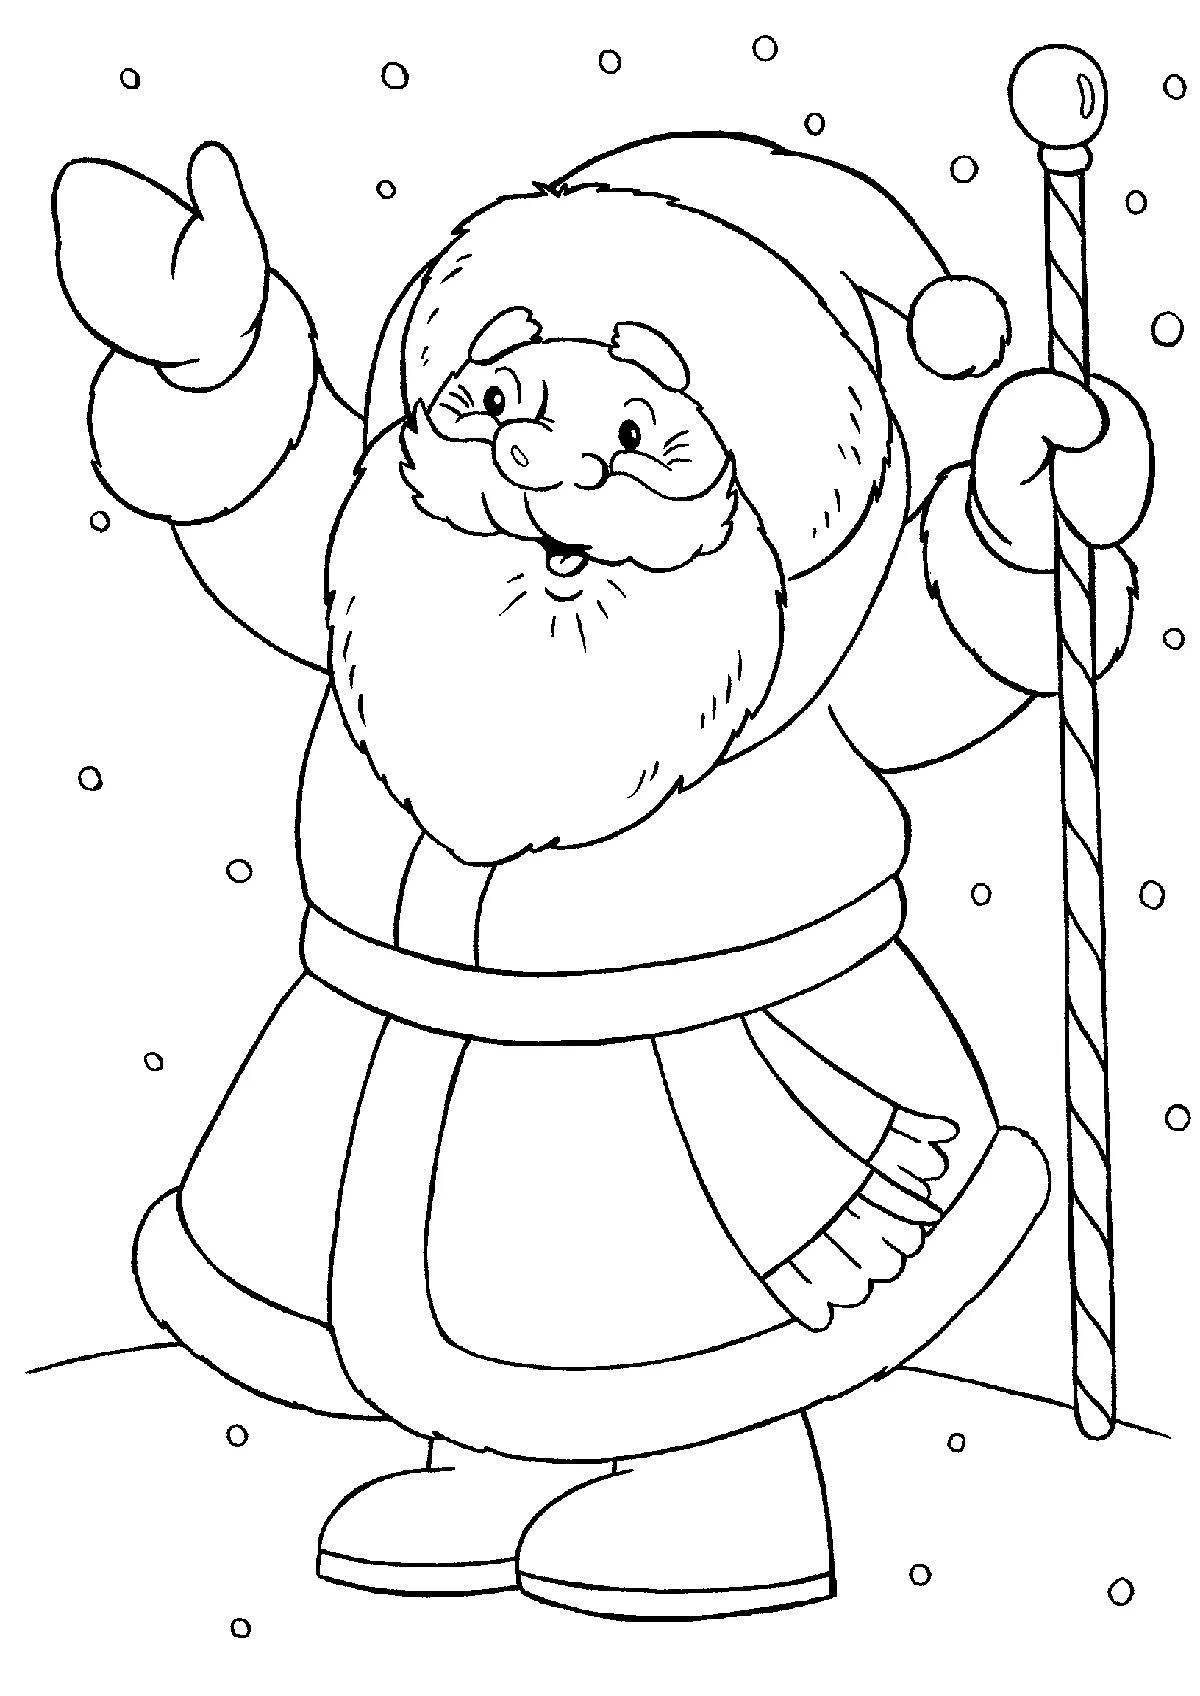 Shiny Santa Claus coloring book